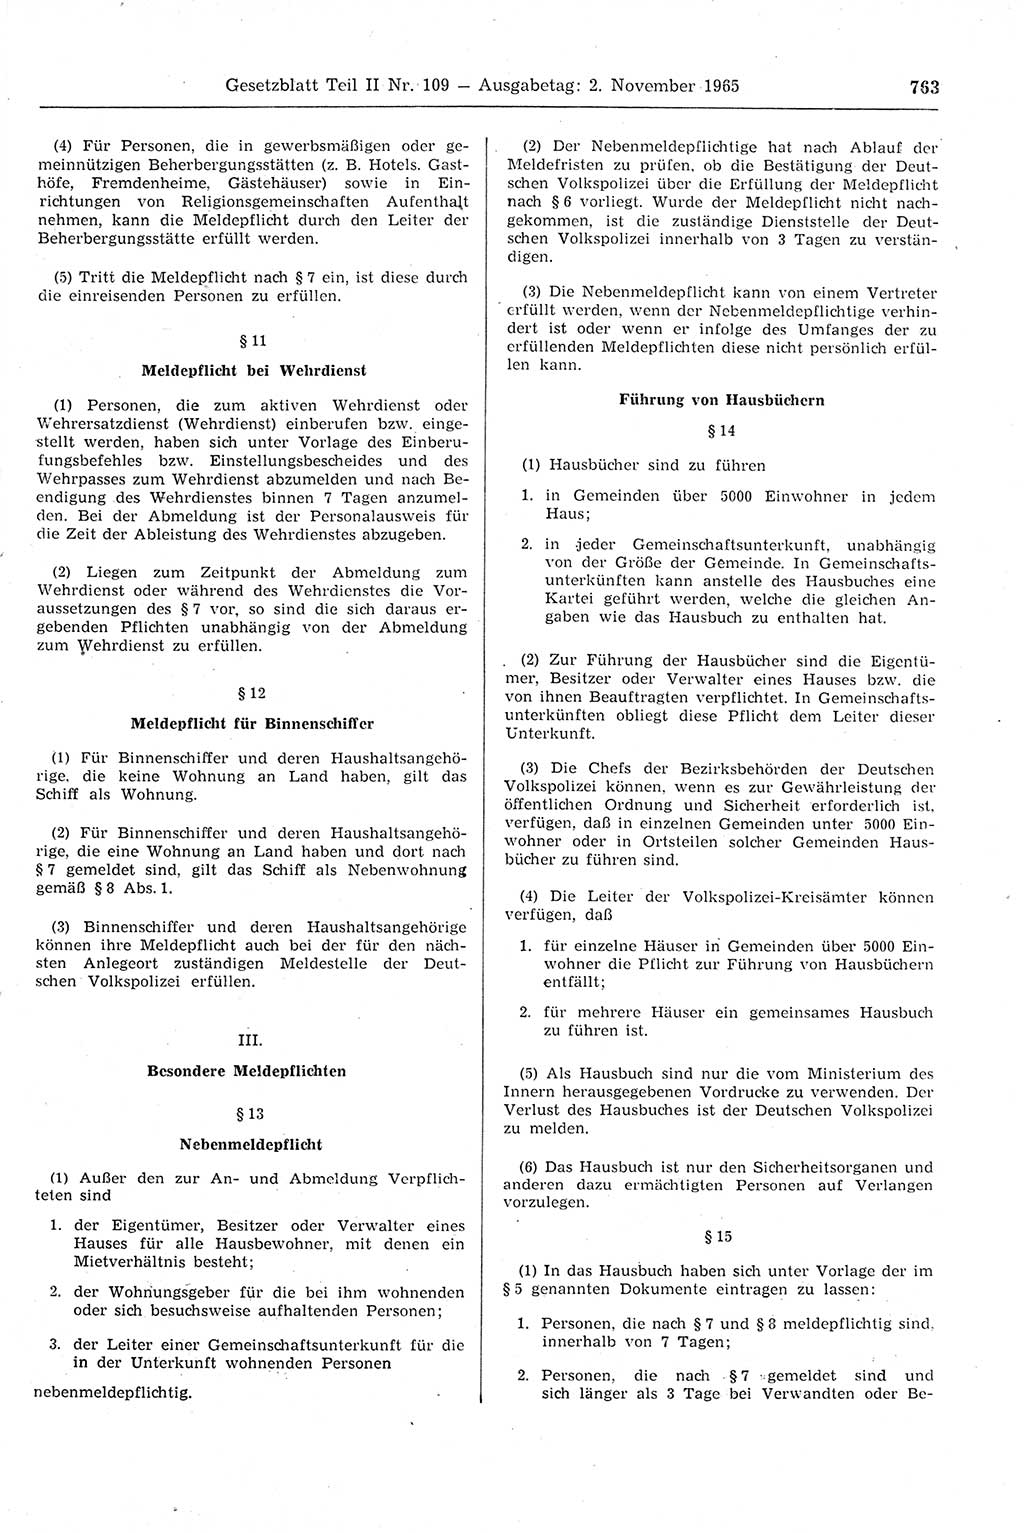 Gesetzblatt (GBl.) der Deutschen Demokratischen Republik (DDR) Teil ⅠⅠ 1965, Seite 763 (GBl. DDR ⅠⅠ 1965, S. 763)